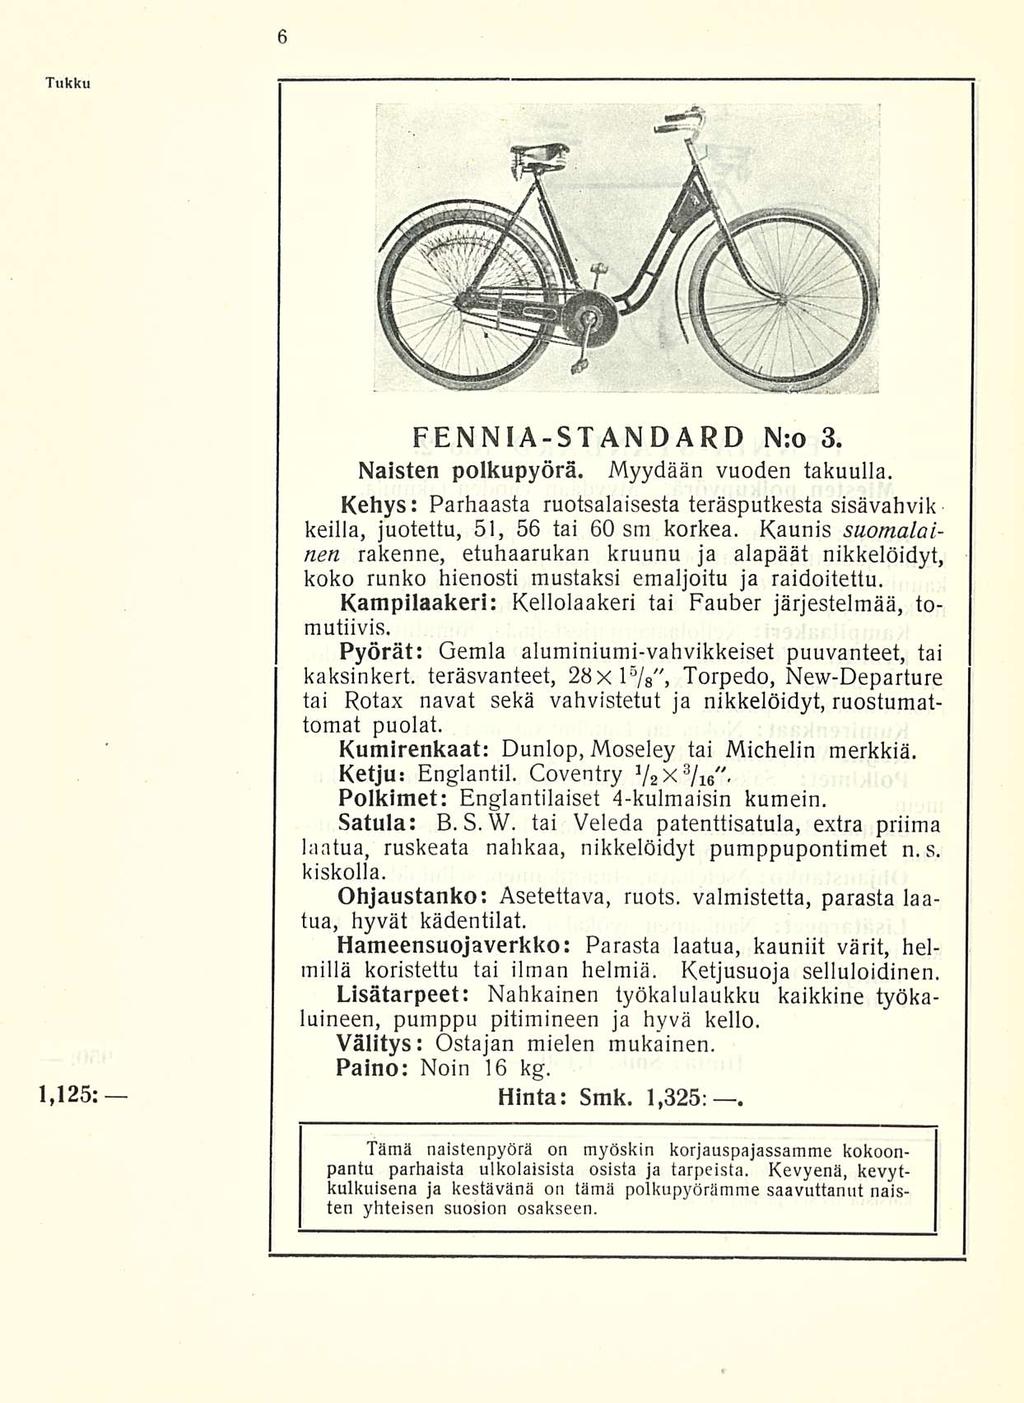 Tukku 1,125: FENNIA-STANDARD N:o 3. Naisten polkupyörä. Myydään vuoden takuulla. Kehys: Parhaasta ruotsalaisesta teräsputkesta sisävahvik keillä, juotettu, 51, 56 tai 60 sm korkea.